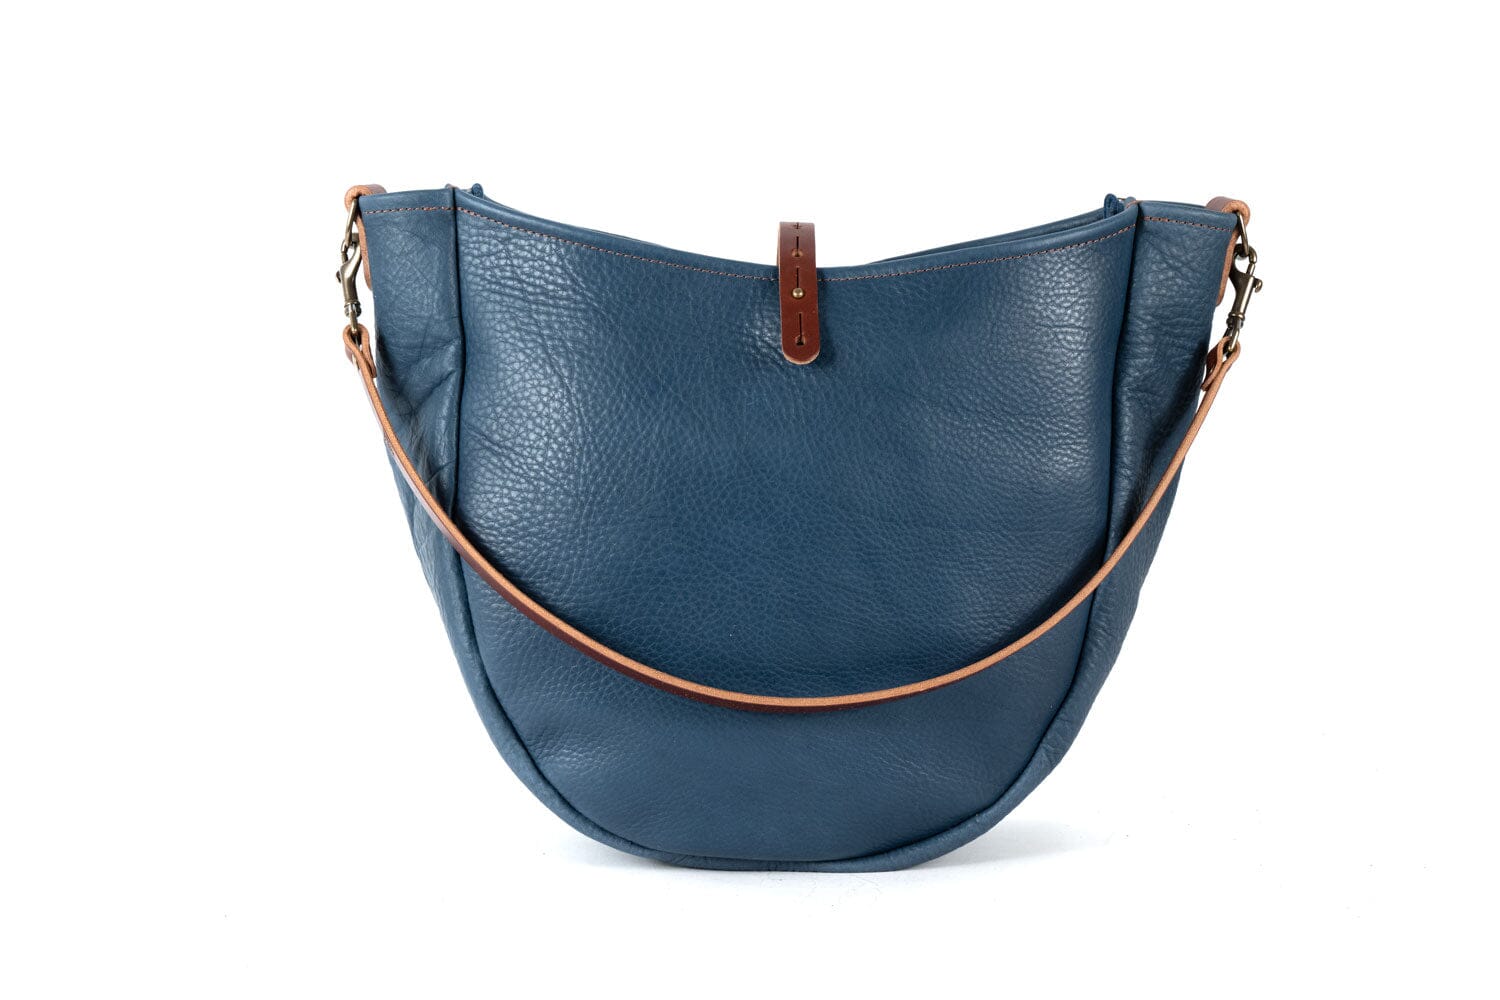 Celeste Leather Hobo Bag - Large - Smokey Blue